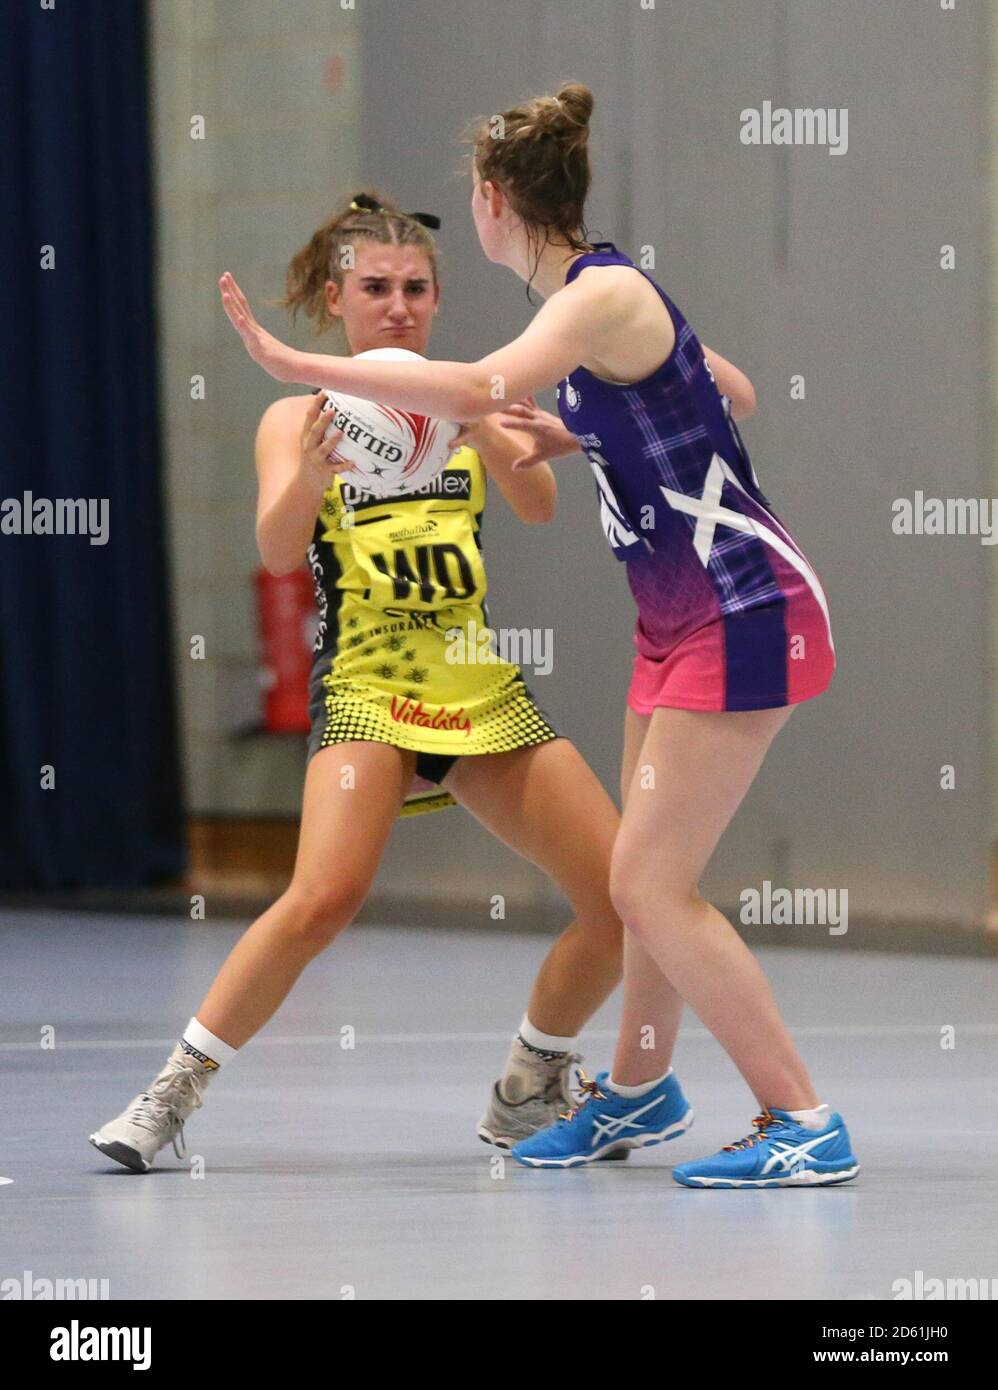 Emma Latto, en Écosse, de netball, en action dans le cadre du concours Netball Lors des Jeux scolaires de 2018 qui se tiennent à l'Université Loughborough Banque D'Images